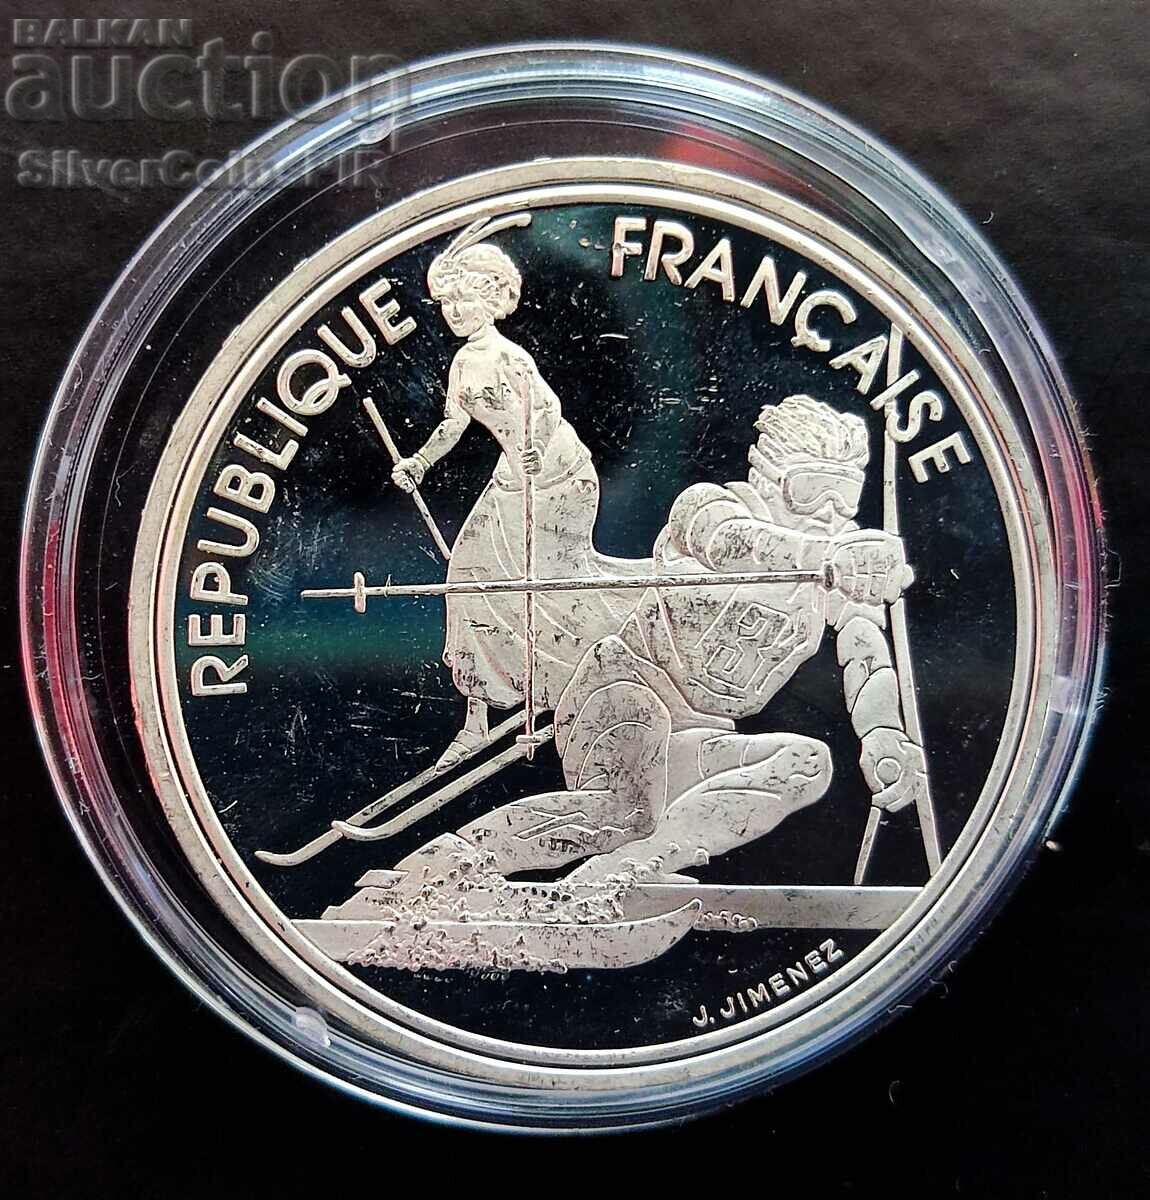 Argint 100 de franci Jocurile Olimpice de schi alpinism 1990 Franța